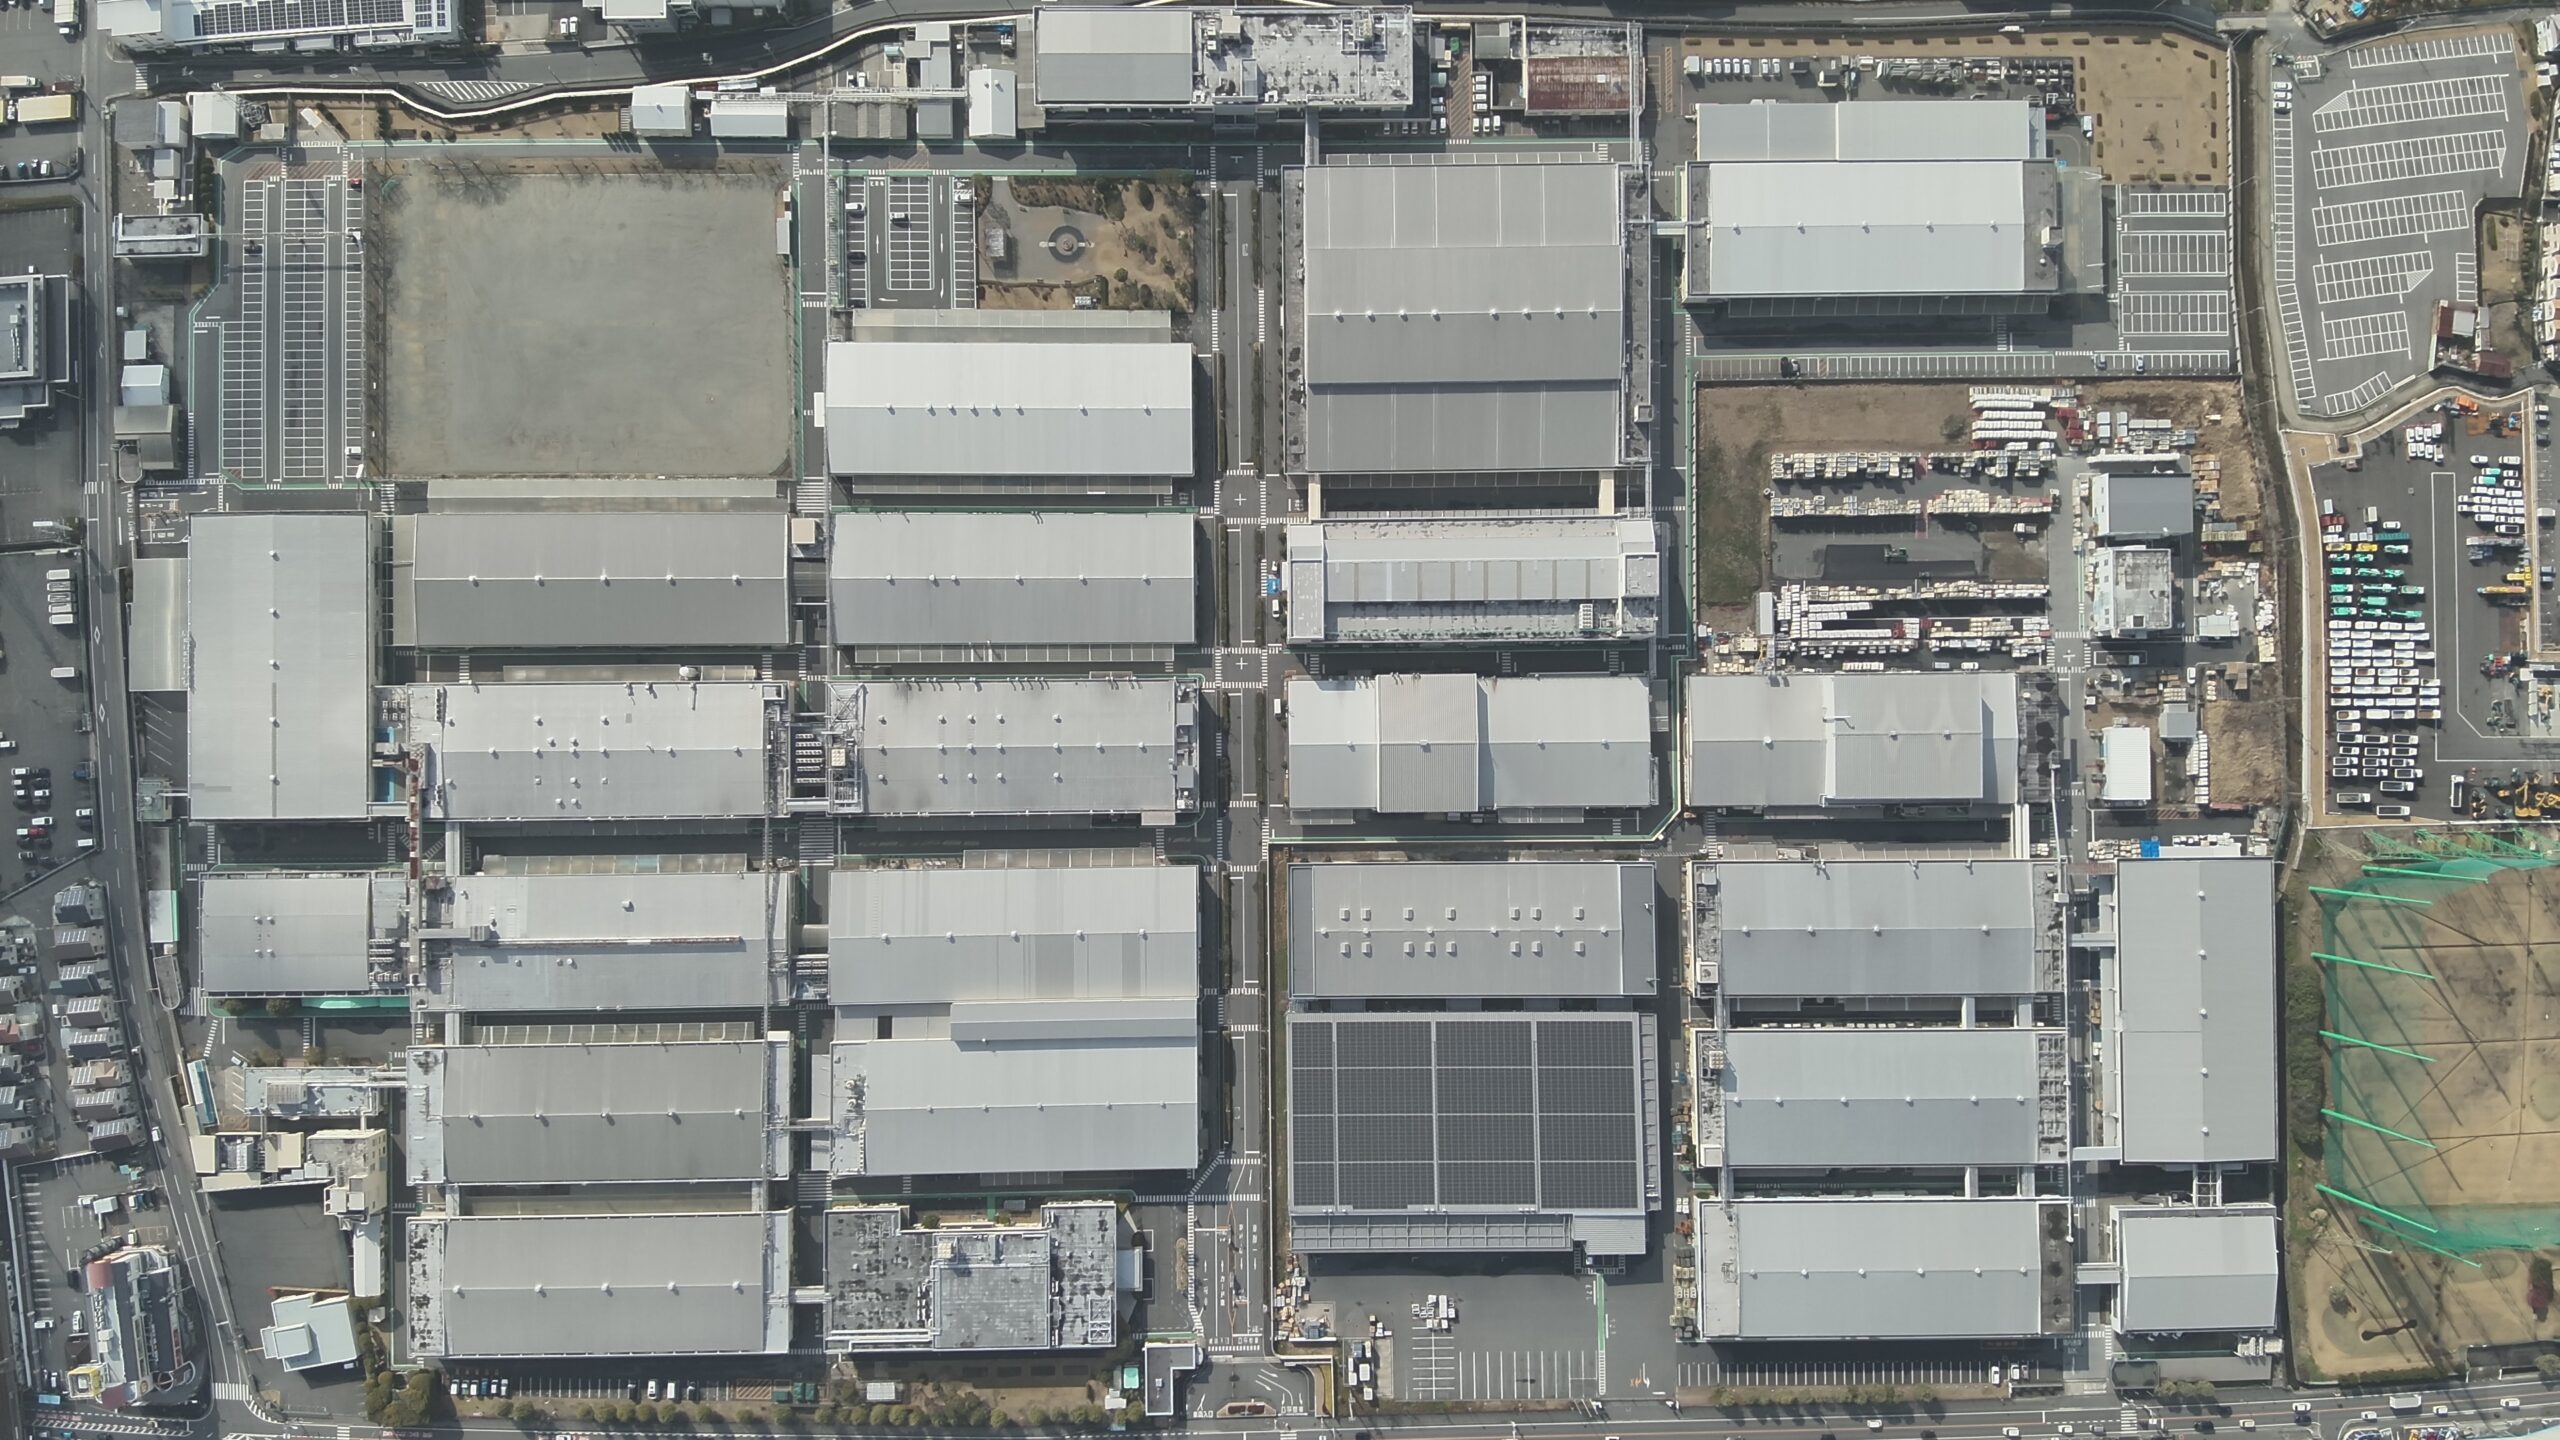 パナソニック 奈良工場様 全景俯瞰写真 空撮 | MAHOROBA DRONE SERVICE